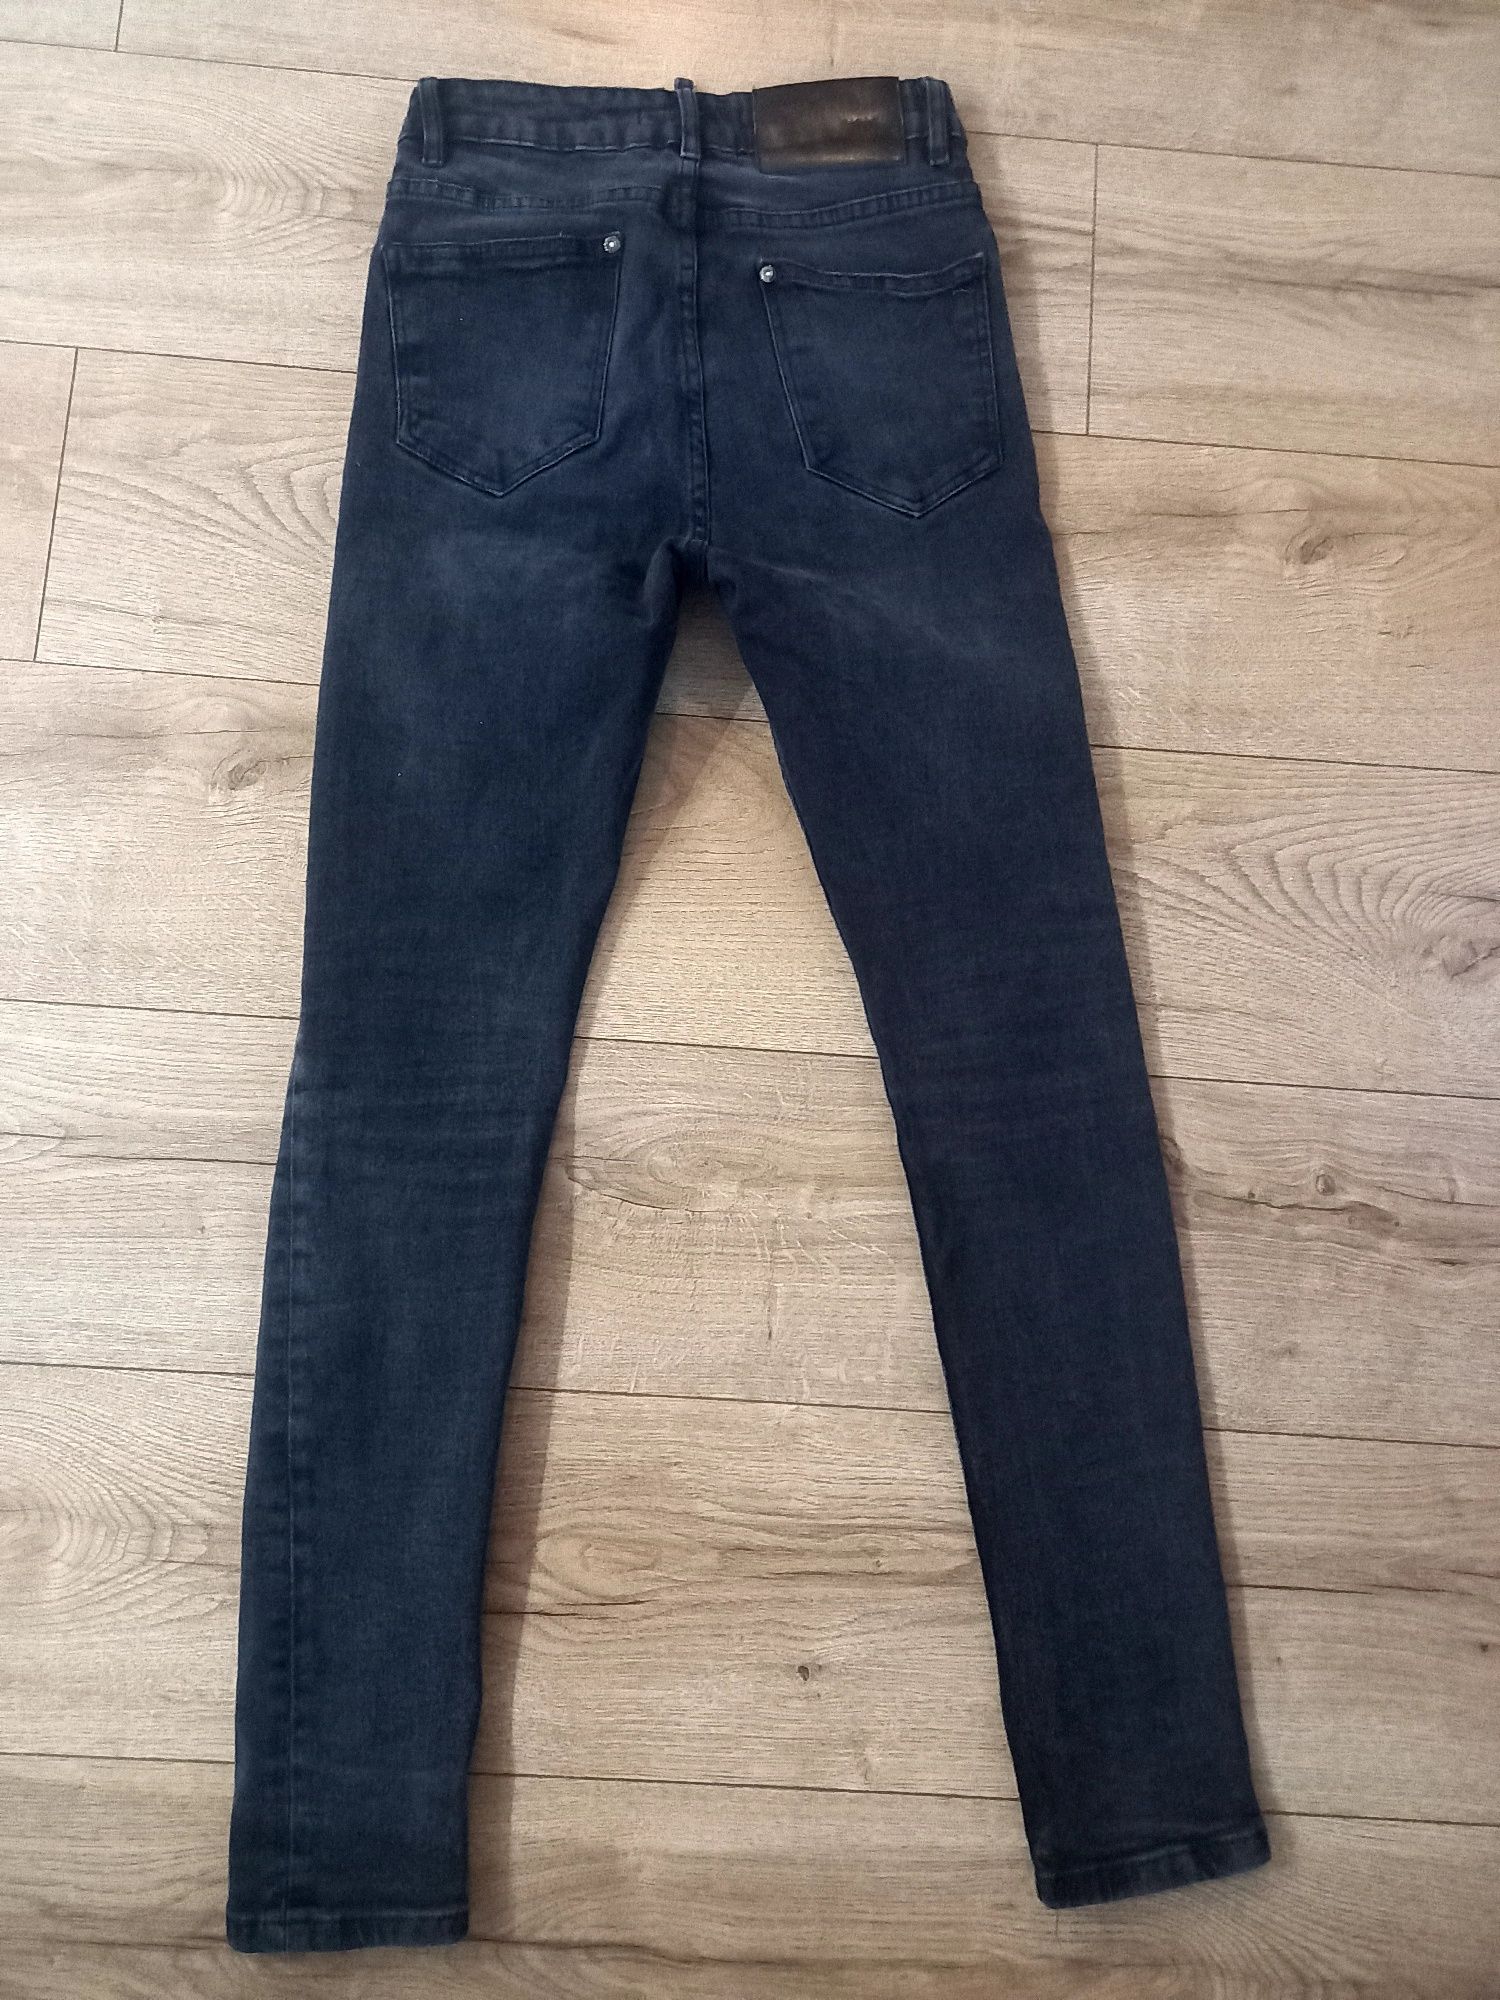 Spodnie jeansy skinny męskie chłopięce skinny czarno-szare Zara r. 36